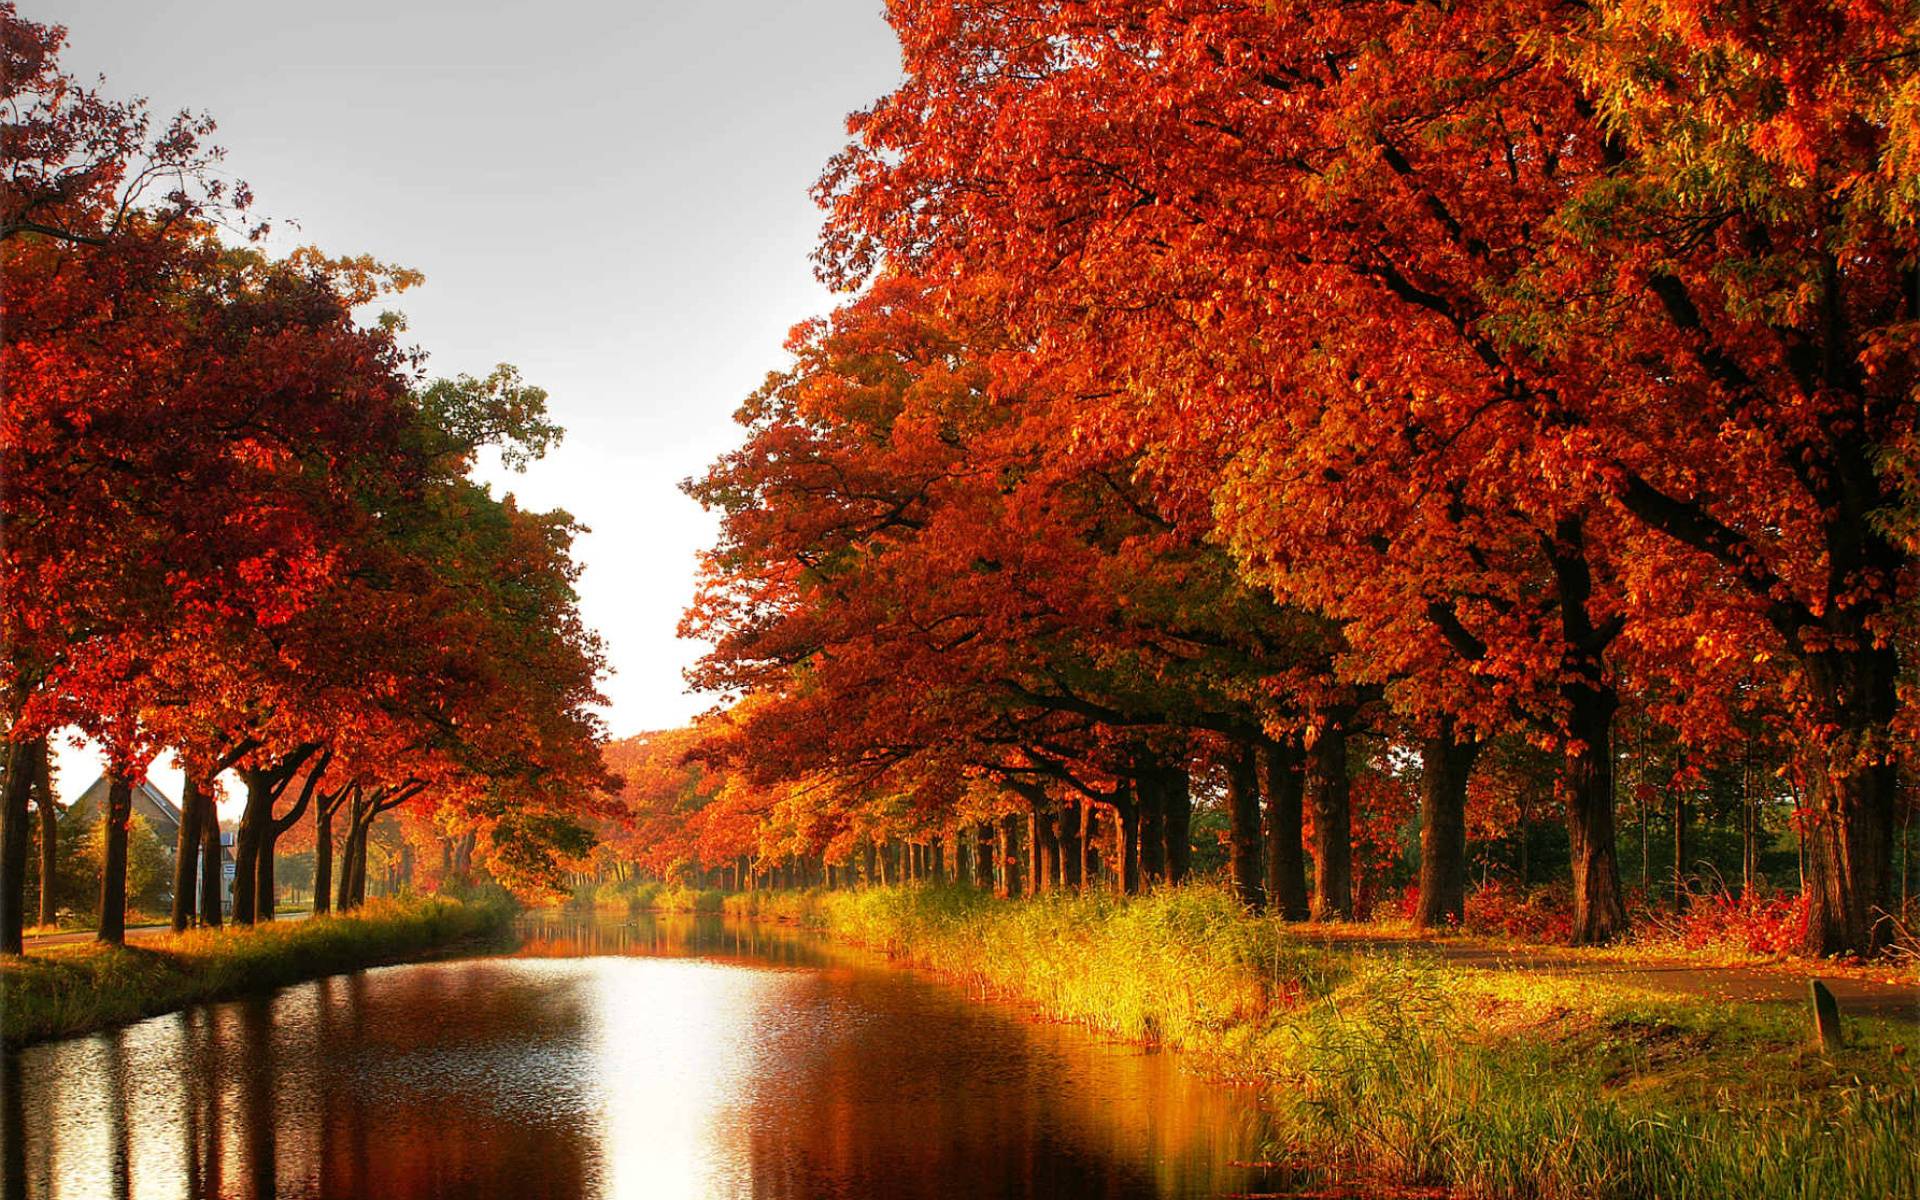 Autumn tree wallpaper